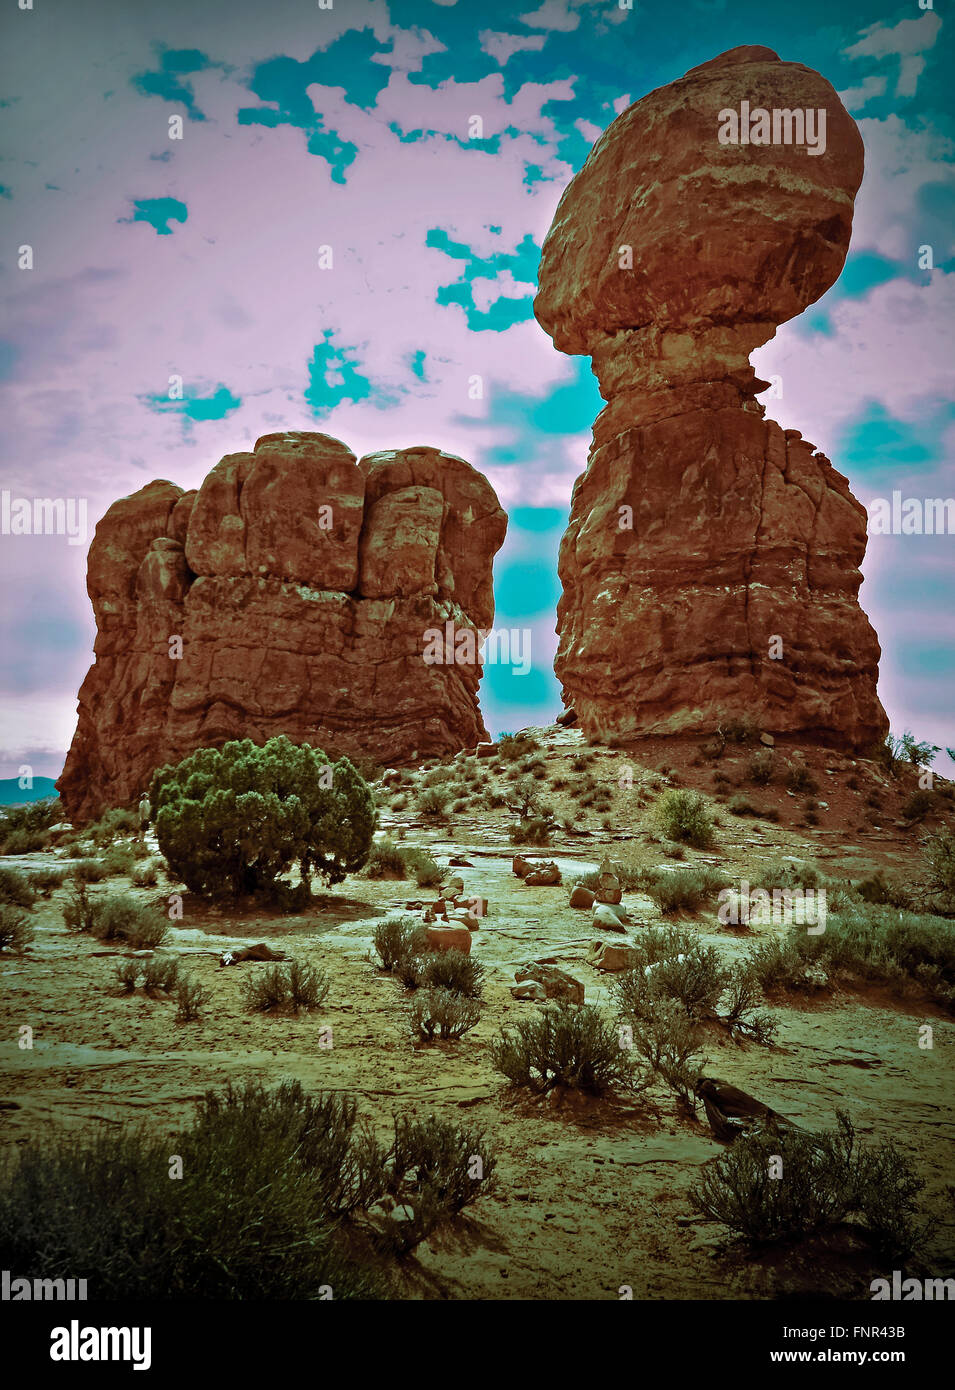 Immagine della roccia equilibrato in archi, Utah. Migliorate digitalmente spirituale e lugubre concetto senza tempo di presenza. Foto Stock